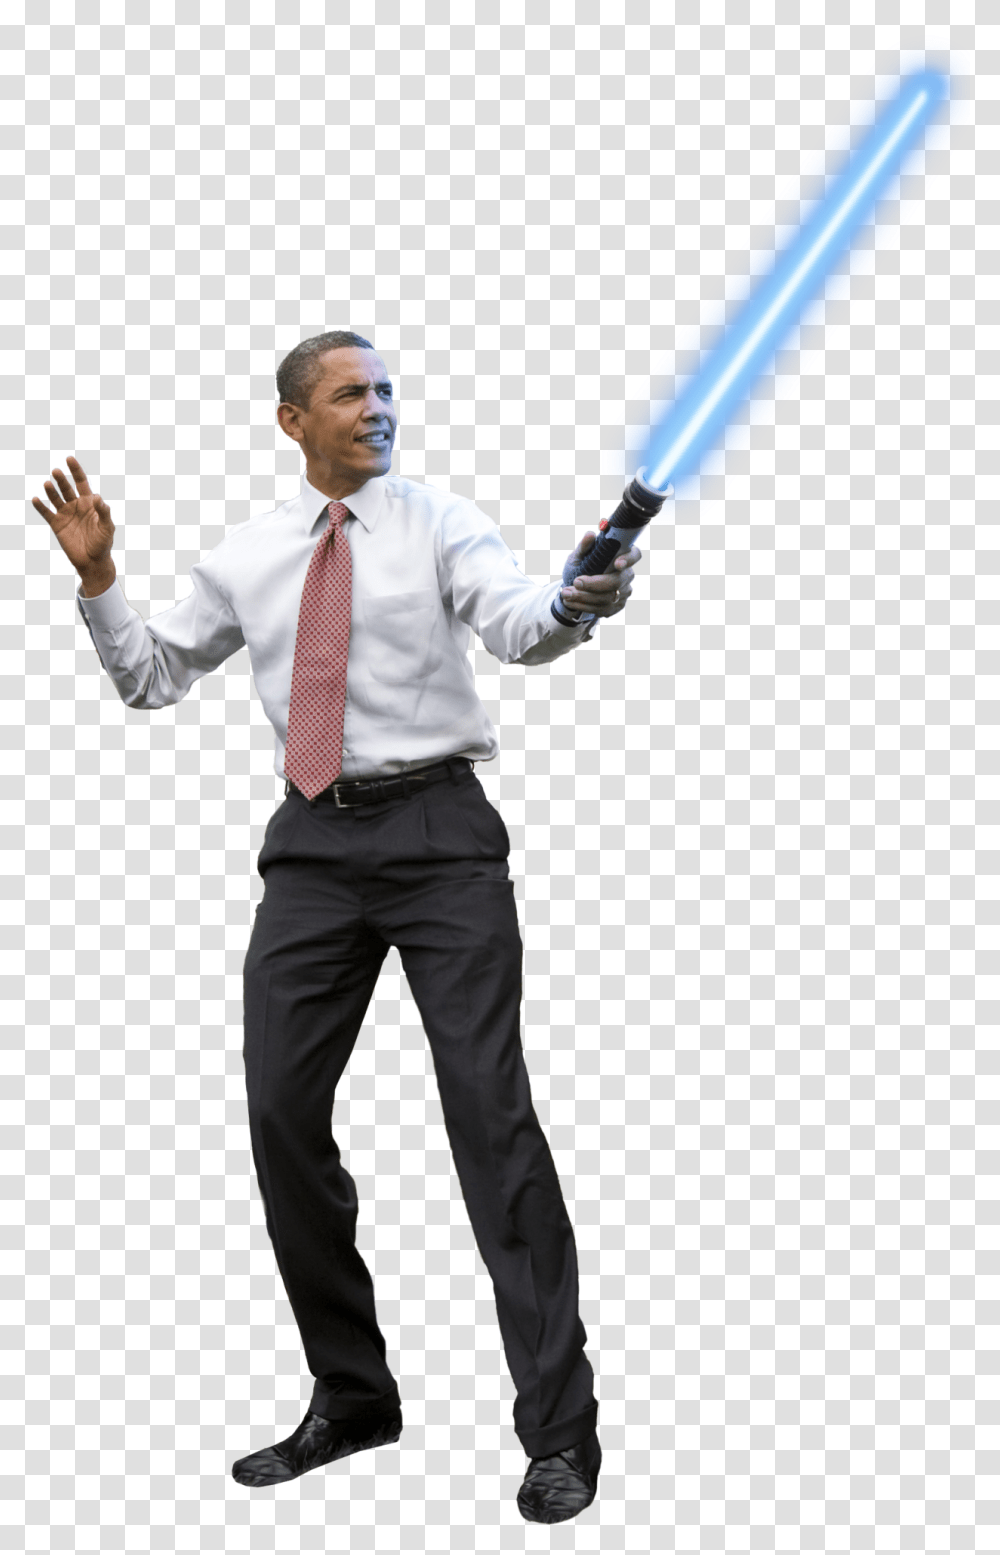 Obama Holding A Lightsaber Outside Of The Barack Obama Light Saber, Tie, Clothing, Person, Shirt Transparent Png